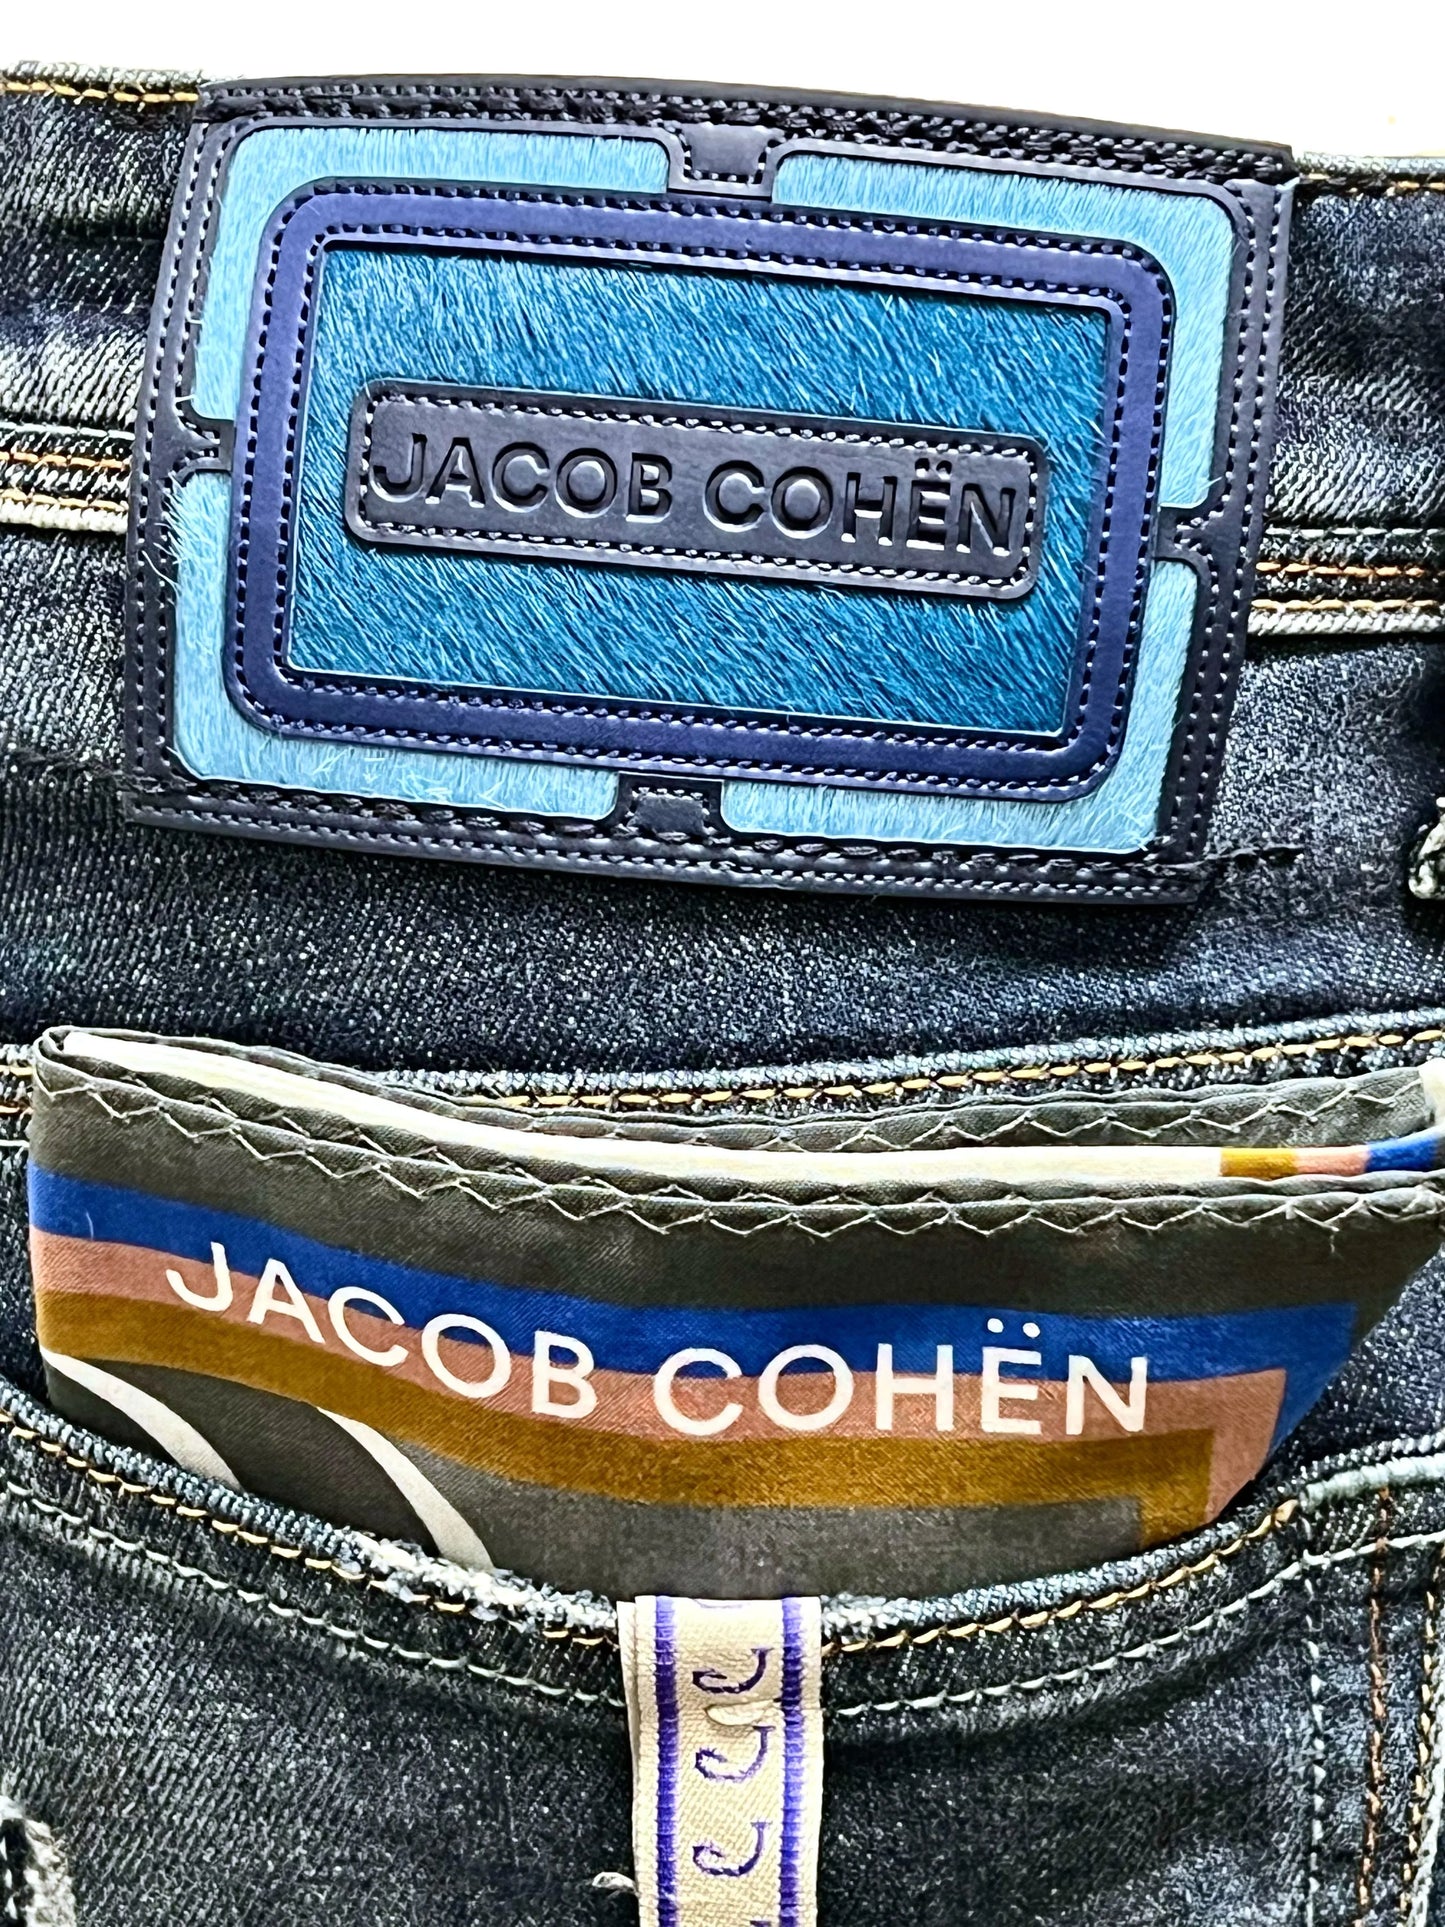 Jacob Cohen, SCOTT blue label, vintage dark washed Jacob Cohen